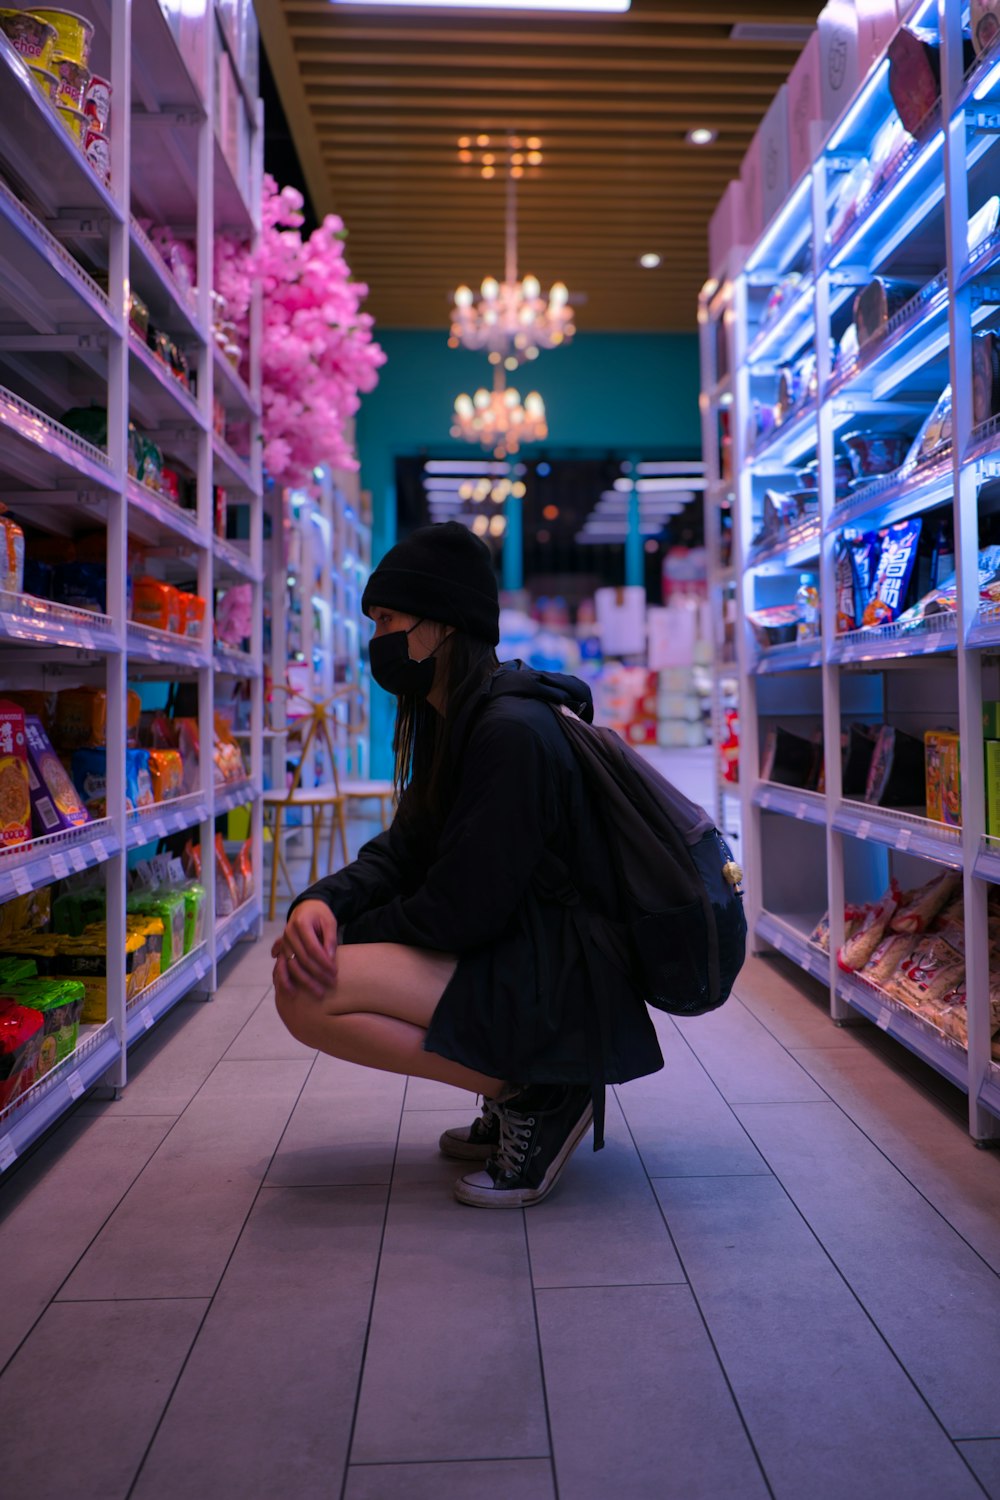 Eine Frau kniet in einem Ladengang